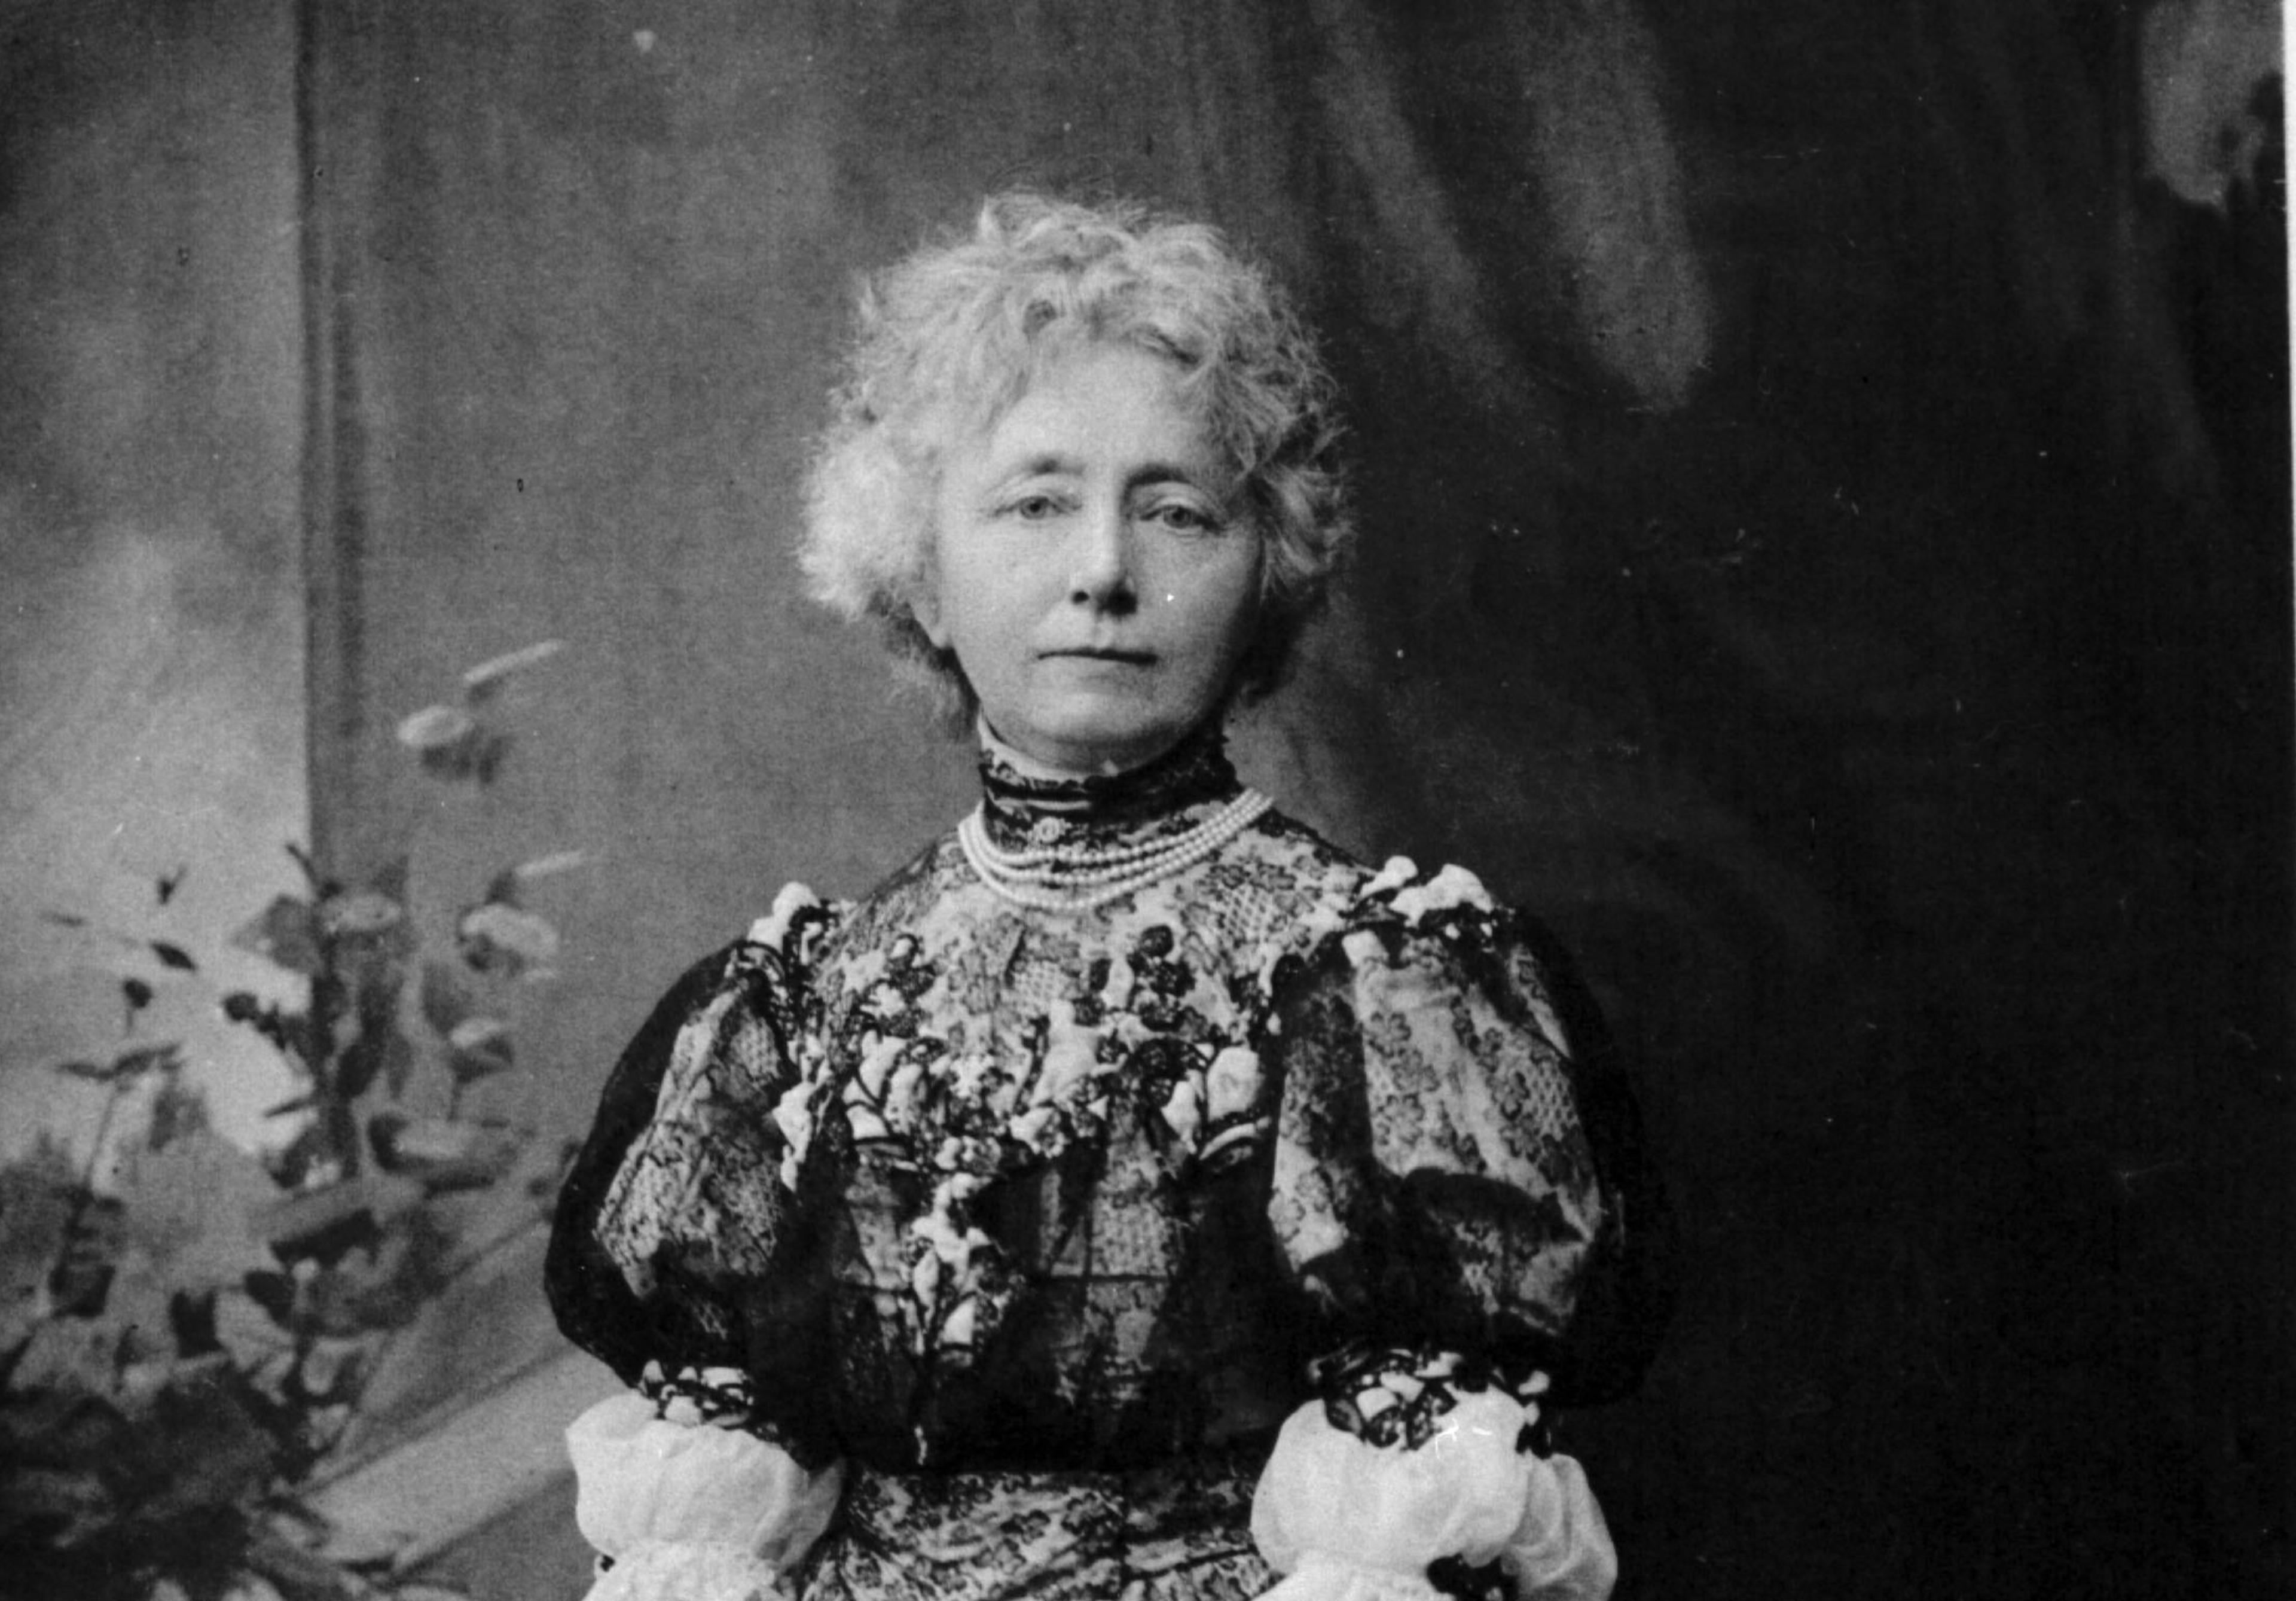 Et portrett av Nina Grieg i sort-hvitt, sett fra livet og opp. Hun ser i kamera, har en blondekjole. Oppsatt frisyre.